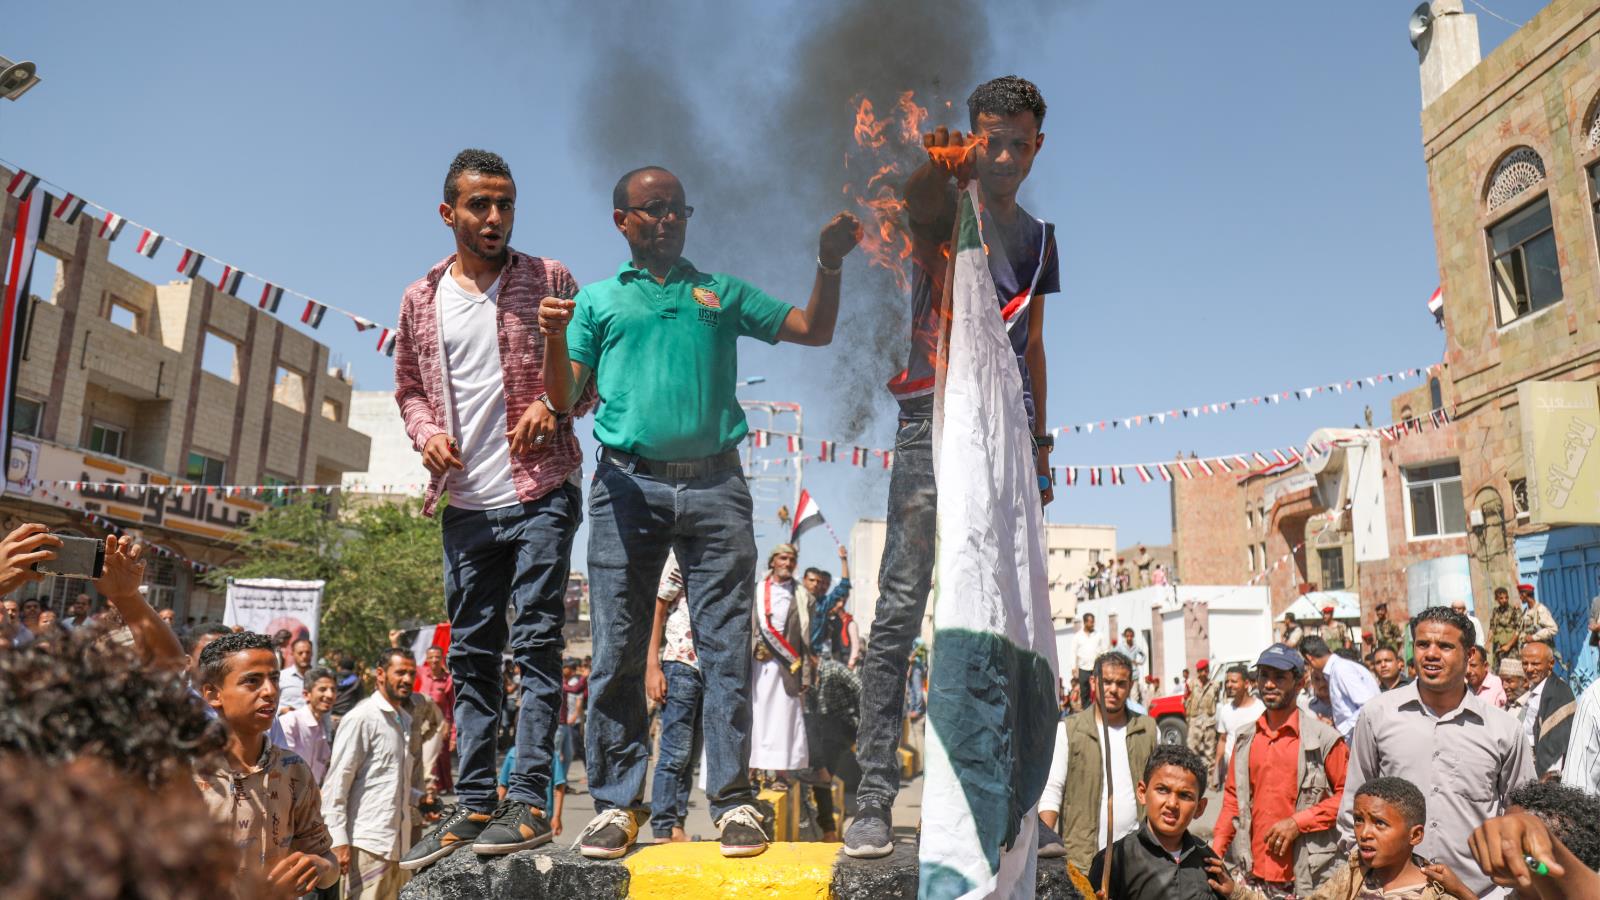 يمنيون يحرقون أعلام السعودية والإمارات احتجاجا على عدم مساعدتهم في وقف الانهيار الاقتصادي (الجزيرة)